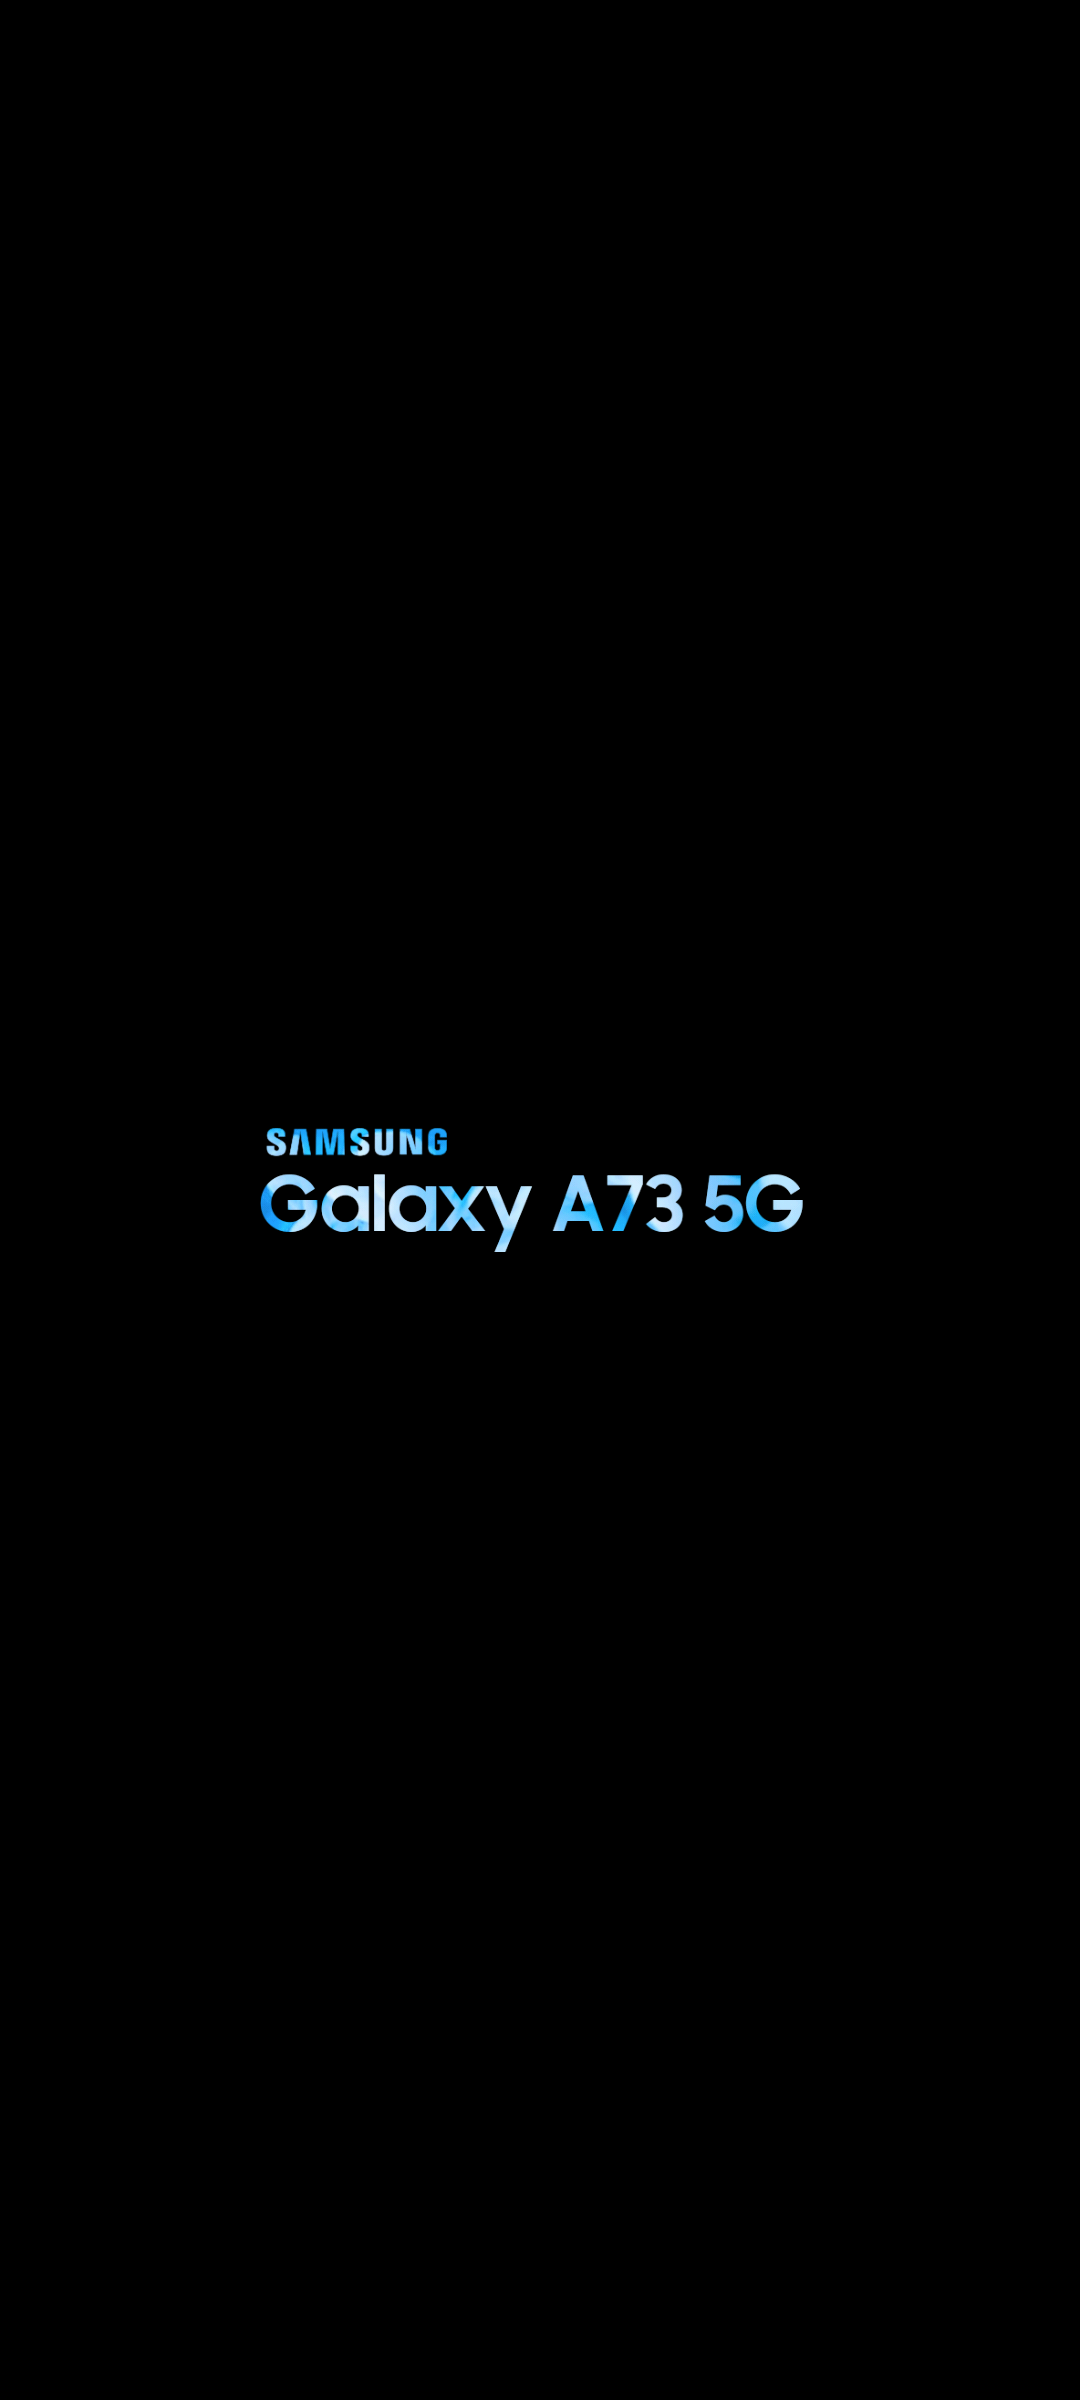 Hình nền cho Samsung Galaxy A73 5G được thiết kế bởi các thành viên của Samsung, mang đến cho bạn một phong cách thiết kế tinh tế và độc đáo. Sử dụng hình nền này để tạo sự khác biệt cho chiếc điện thoại của bạn.